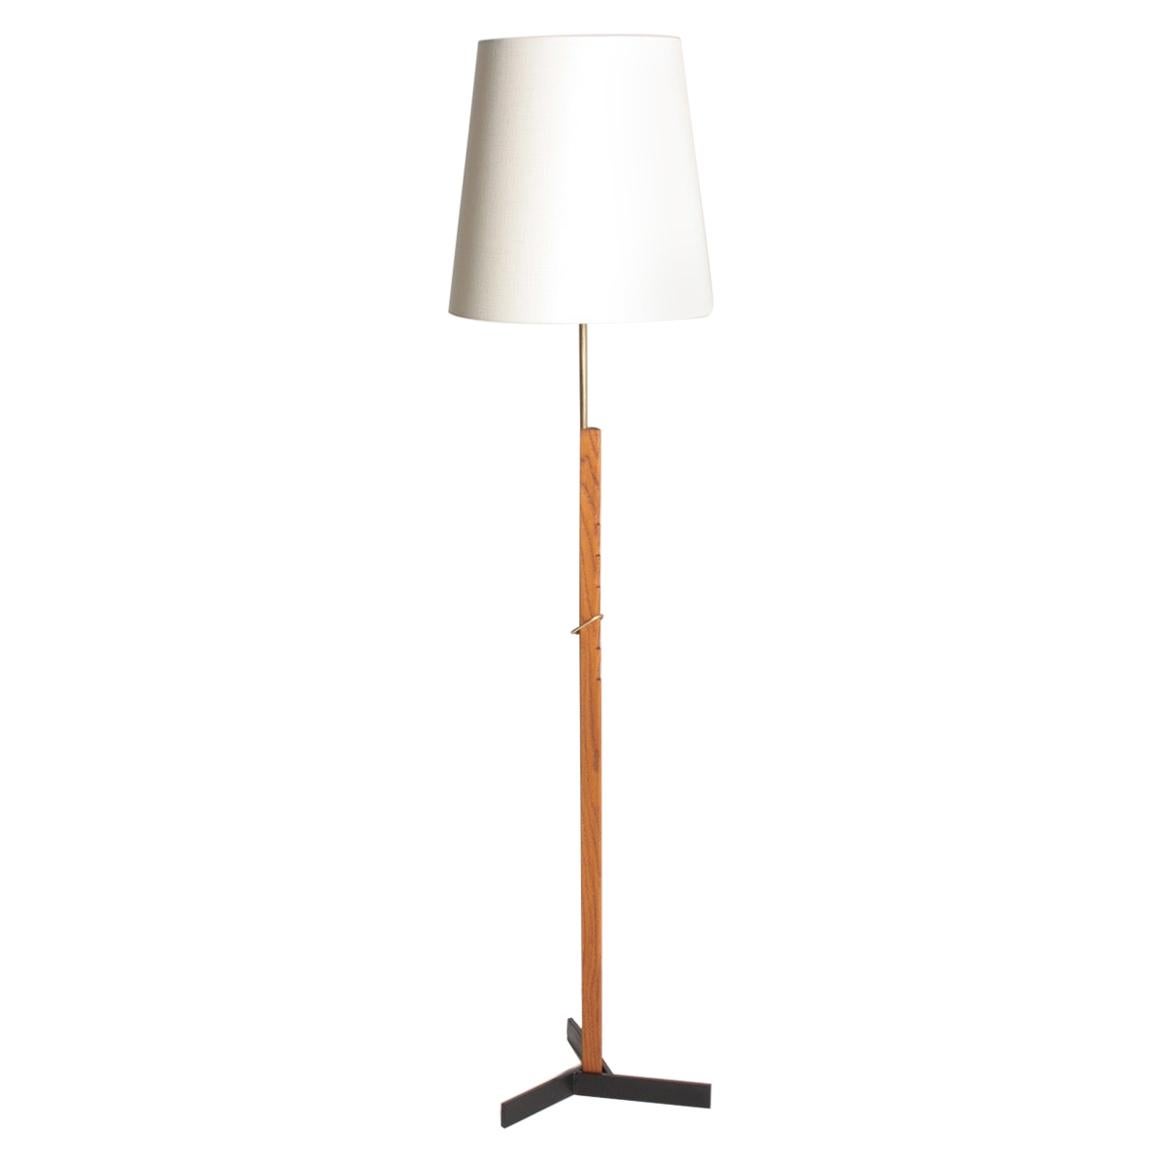 Midcentury Floor Lamp in Oak and Brass by Holm Sorensen, Danish Design, 1950s